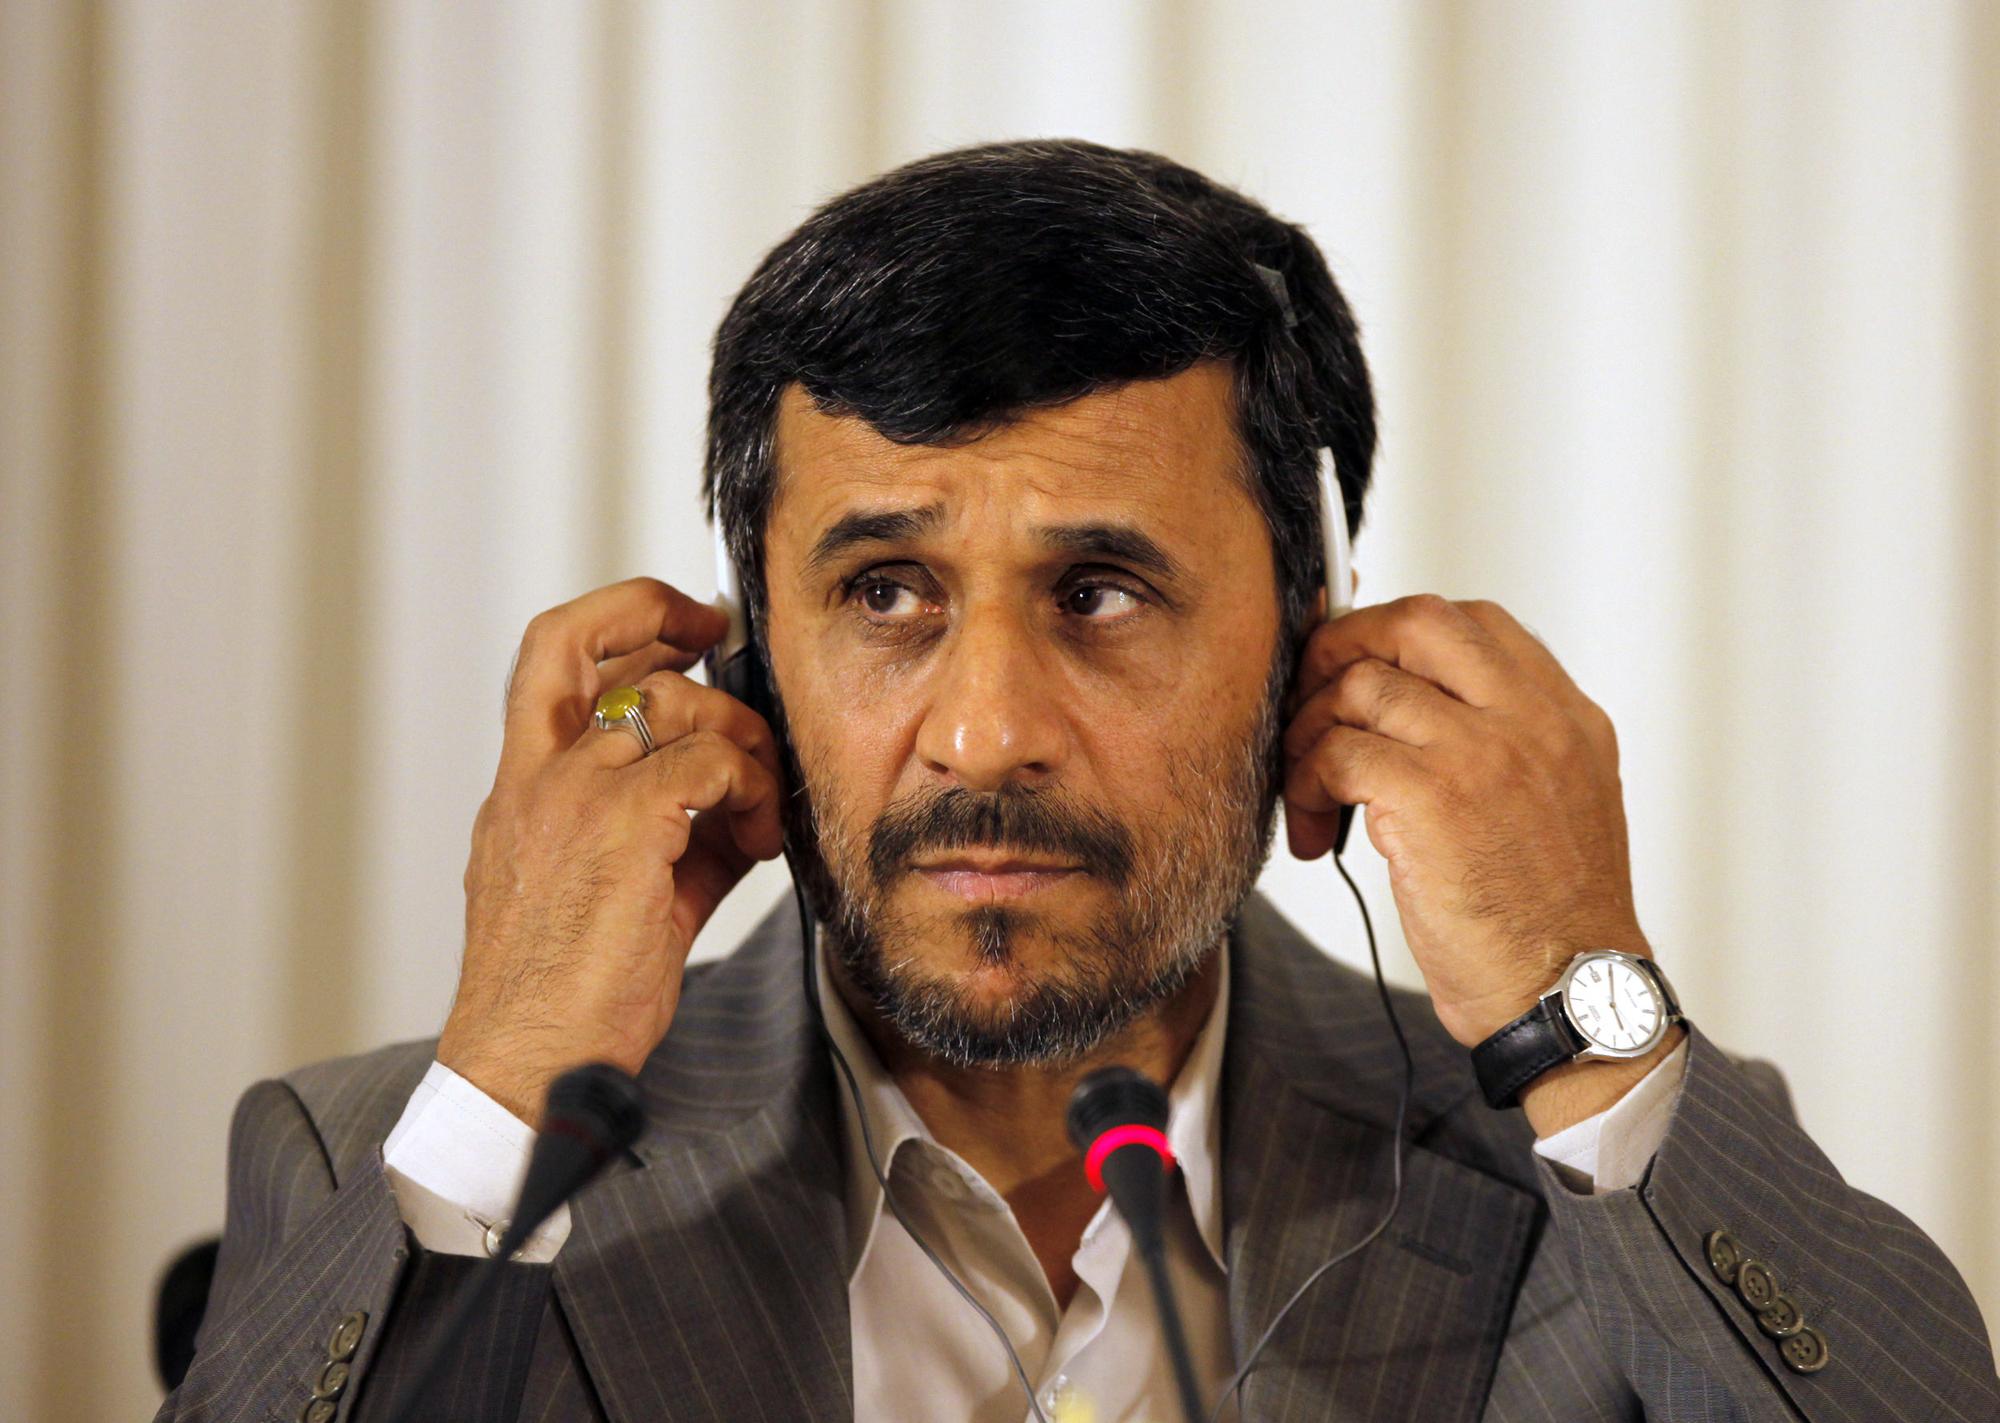 Le président Ahmadinejad devra peut-être bientôt faire face à de nouvelles sanctions. [REUTERS - � Osman Orsal / Reuters]